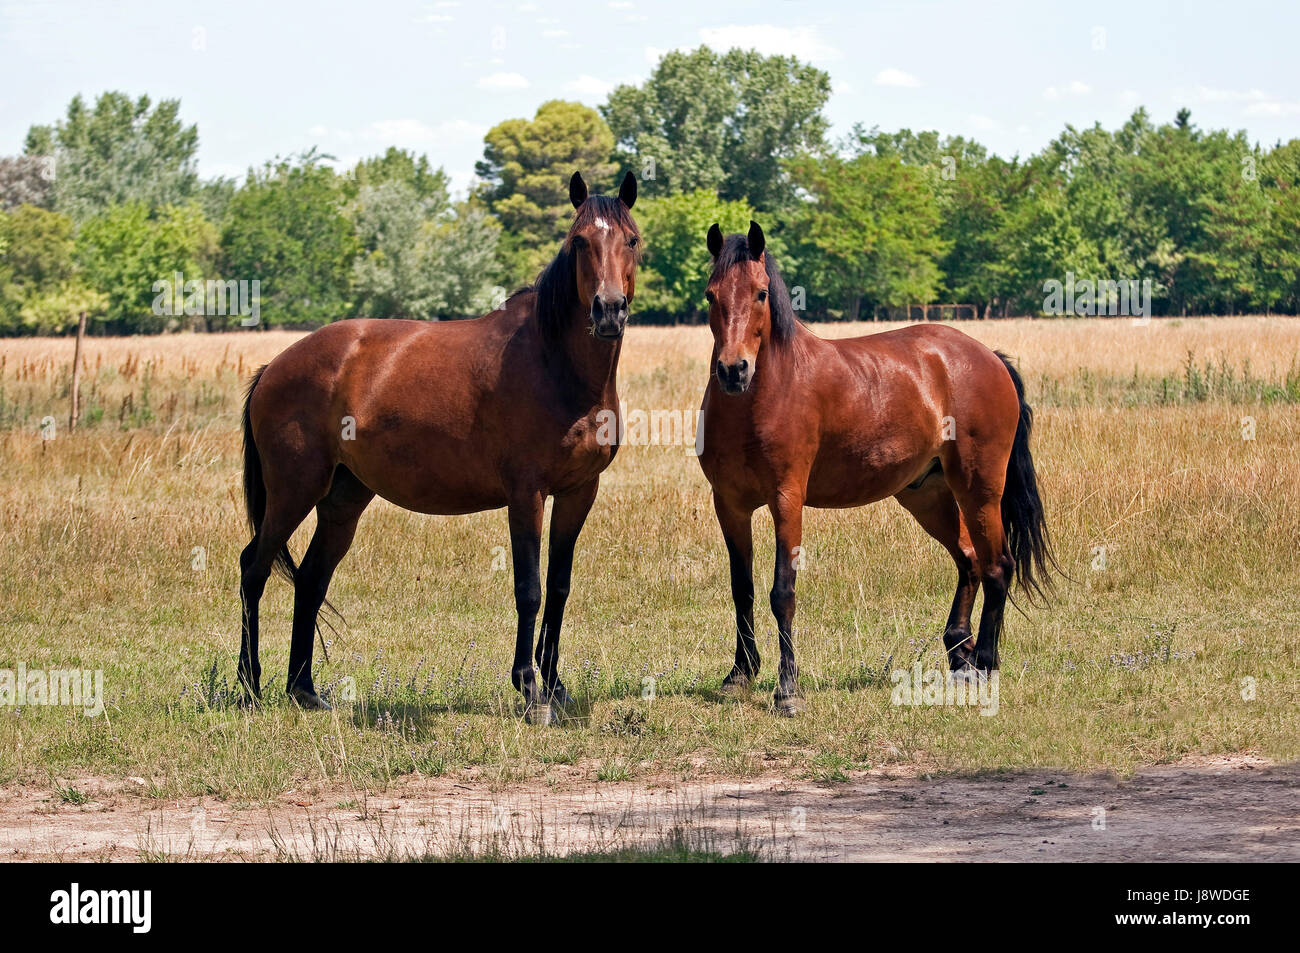 Horse, animale mammifero, fauna, Argentina, paese, prato, erba, prato verde, Foto Stock